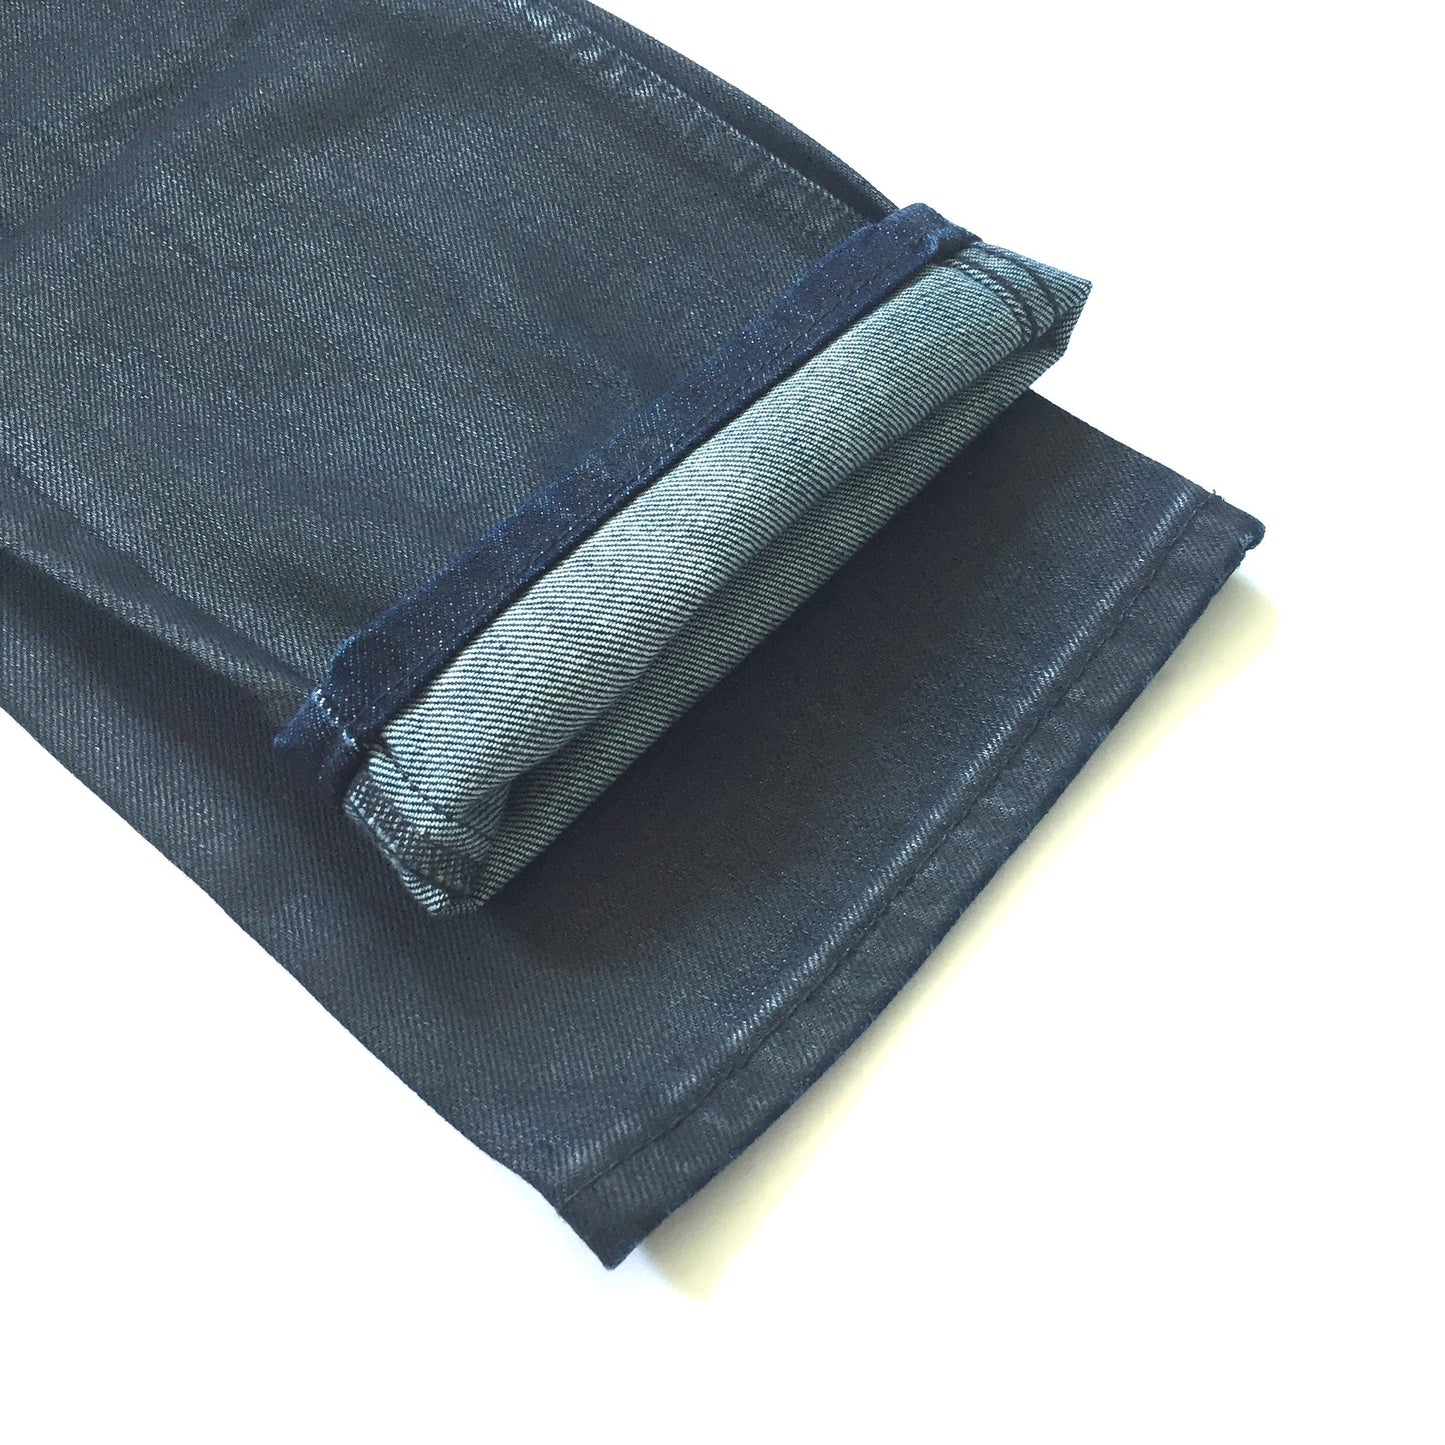 Sandro - Coated Blue Denim Jeans